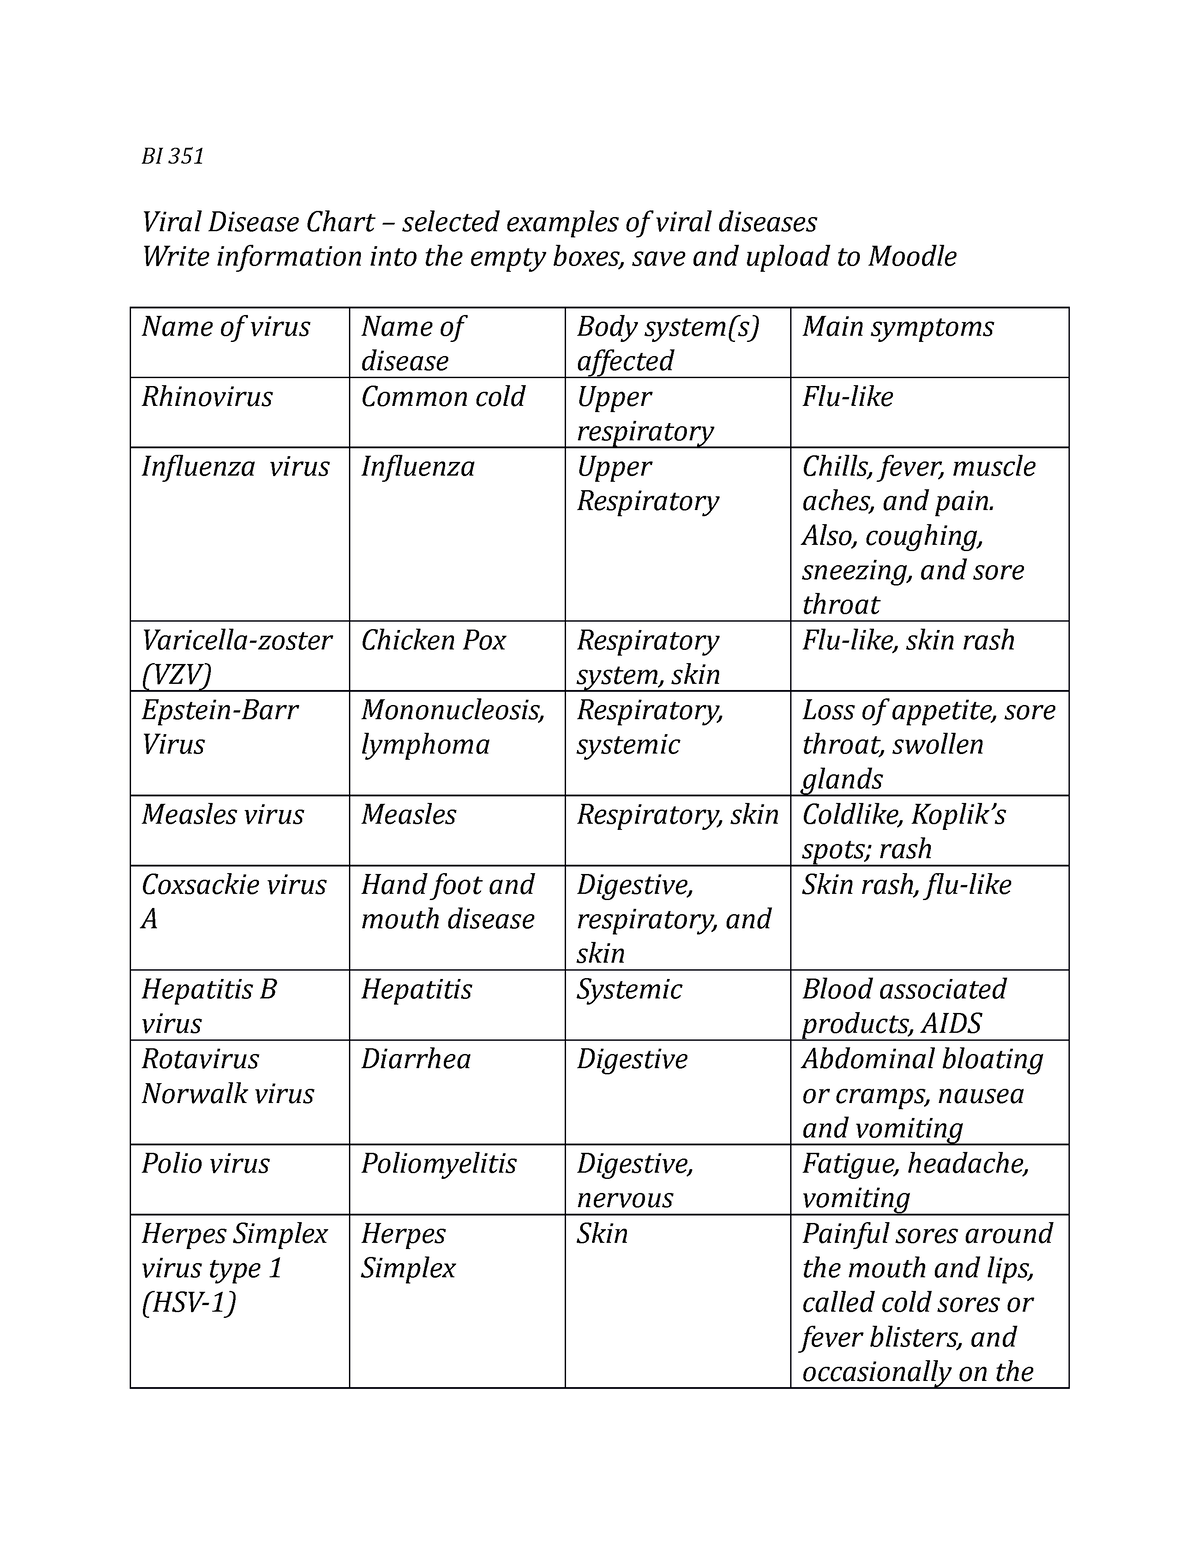 bi-351-disease-chart-viruses-assignment-bi-351-viral-disease-chart